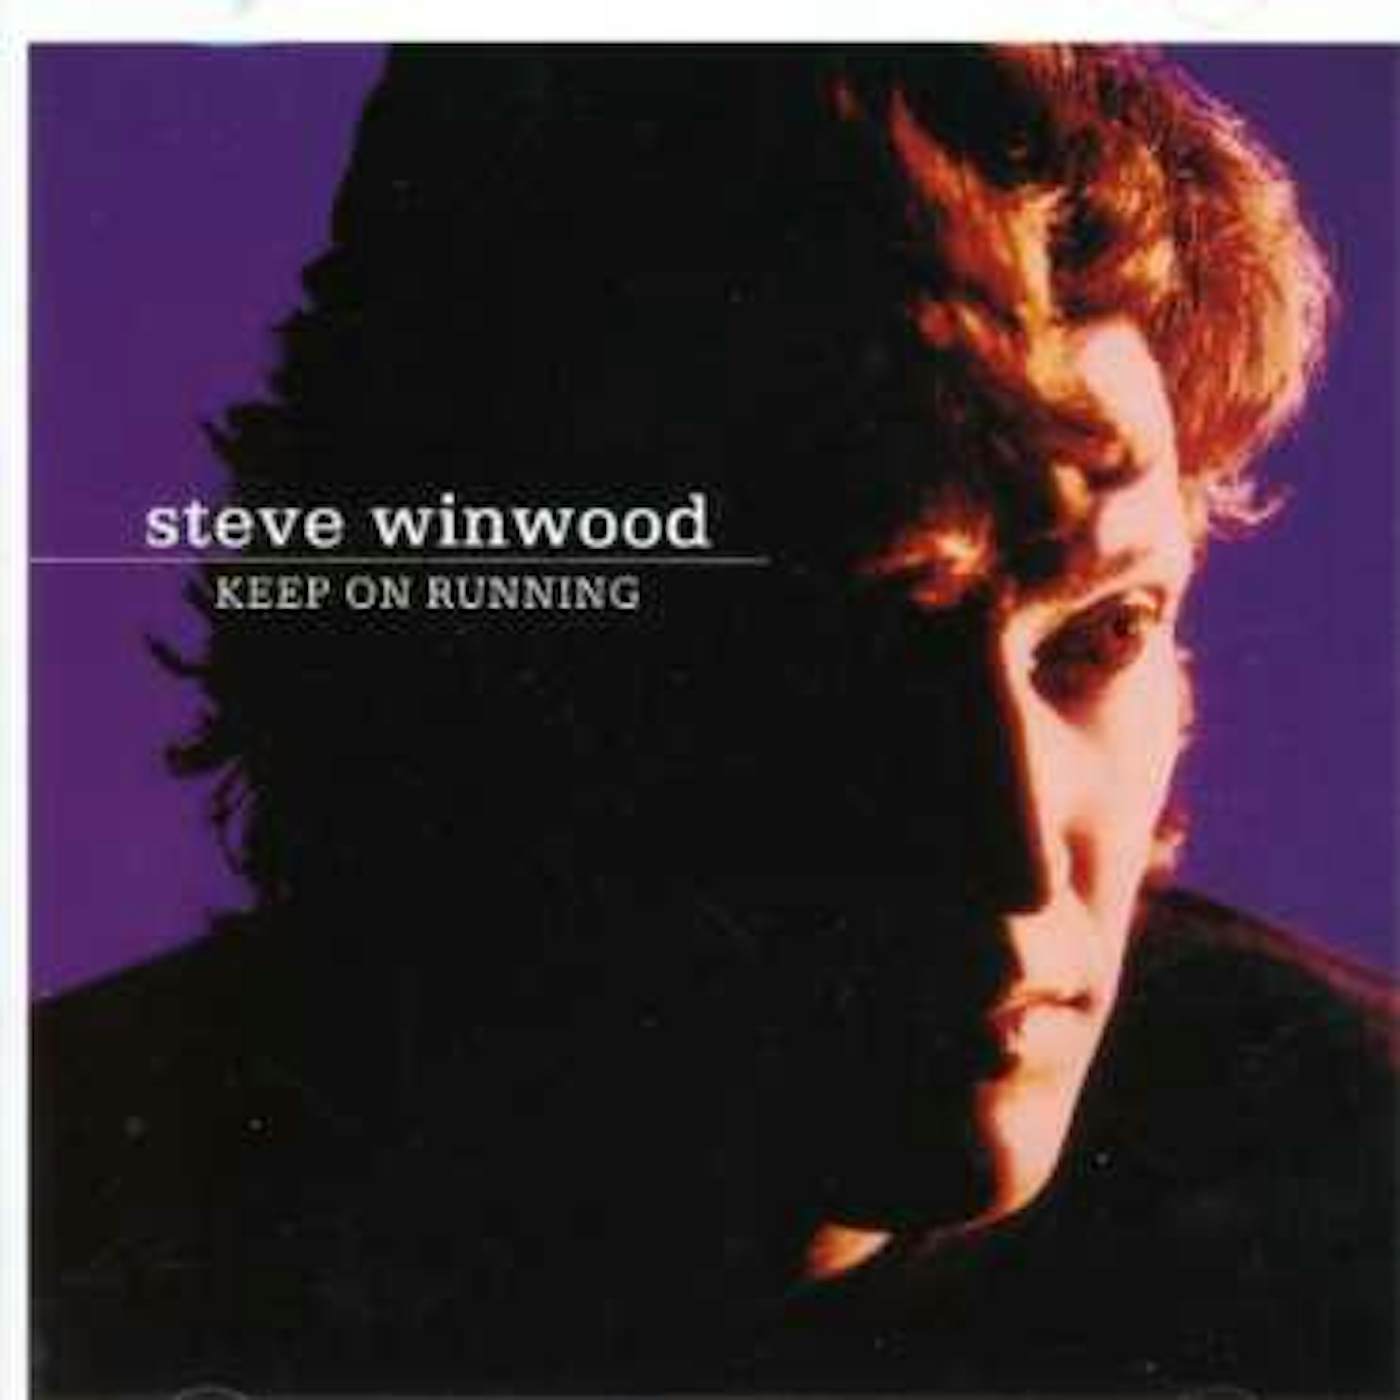 Steve Winwood KEEP ON RUNNING (ANTHOLOGY) CD